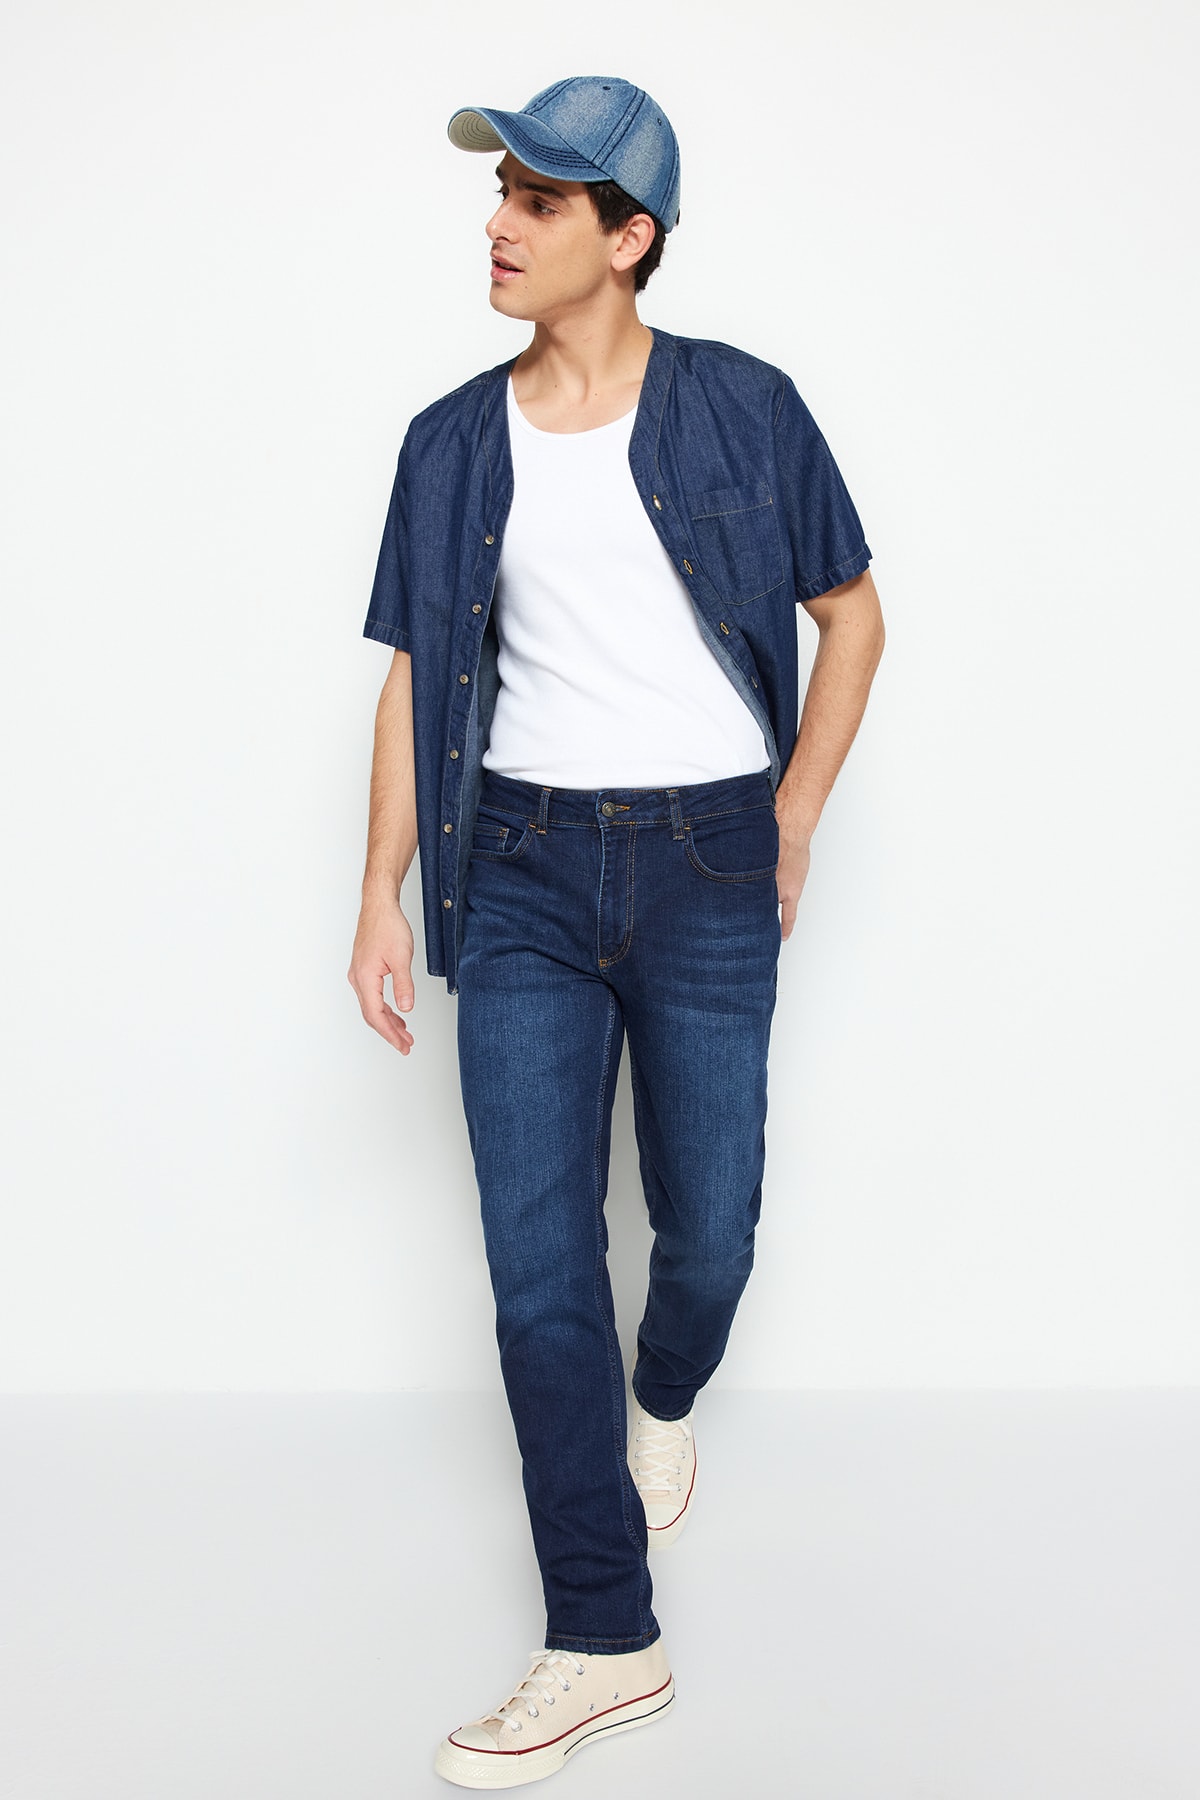 TRENDYOL MAN Açık Lacivert Erkek Premium Özel Koleksiyon Regular Fit Esnek Kumaş Jeans Kot Pantolon